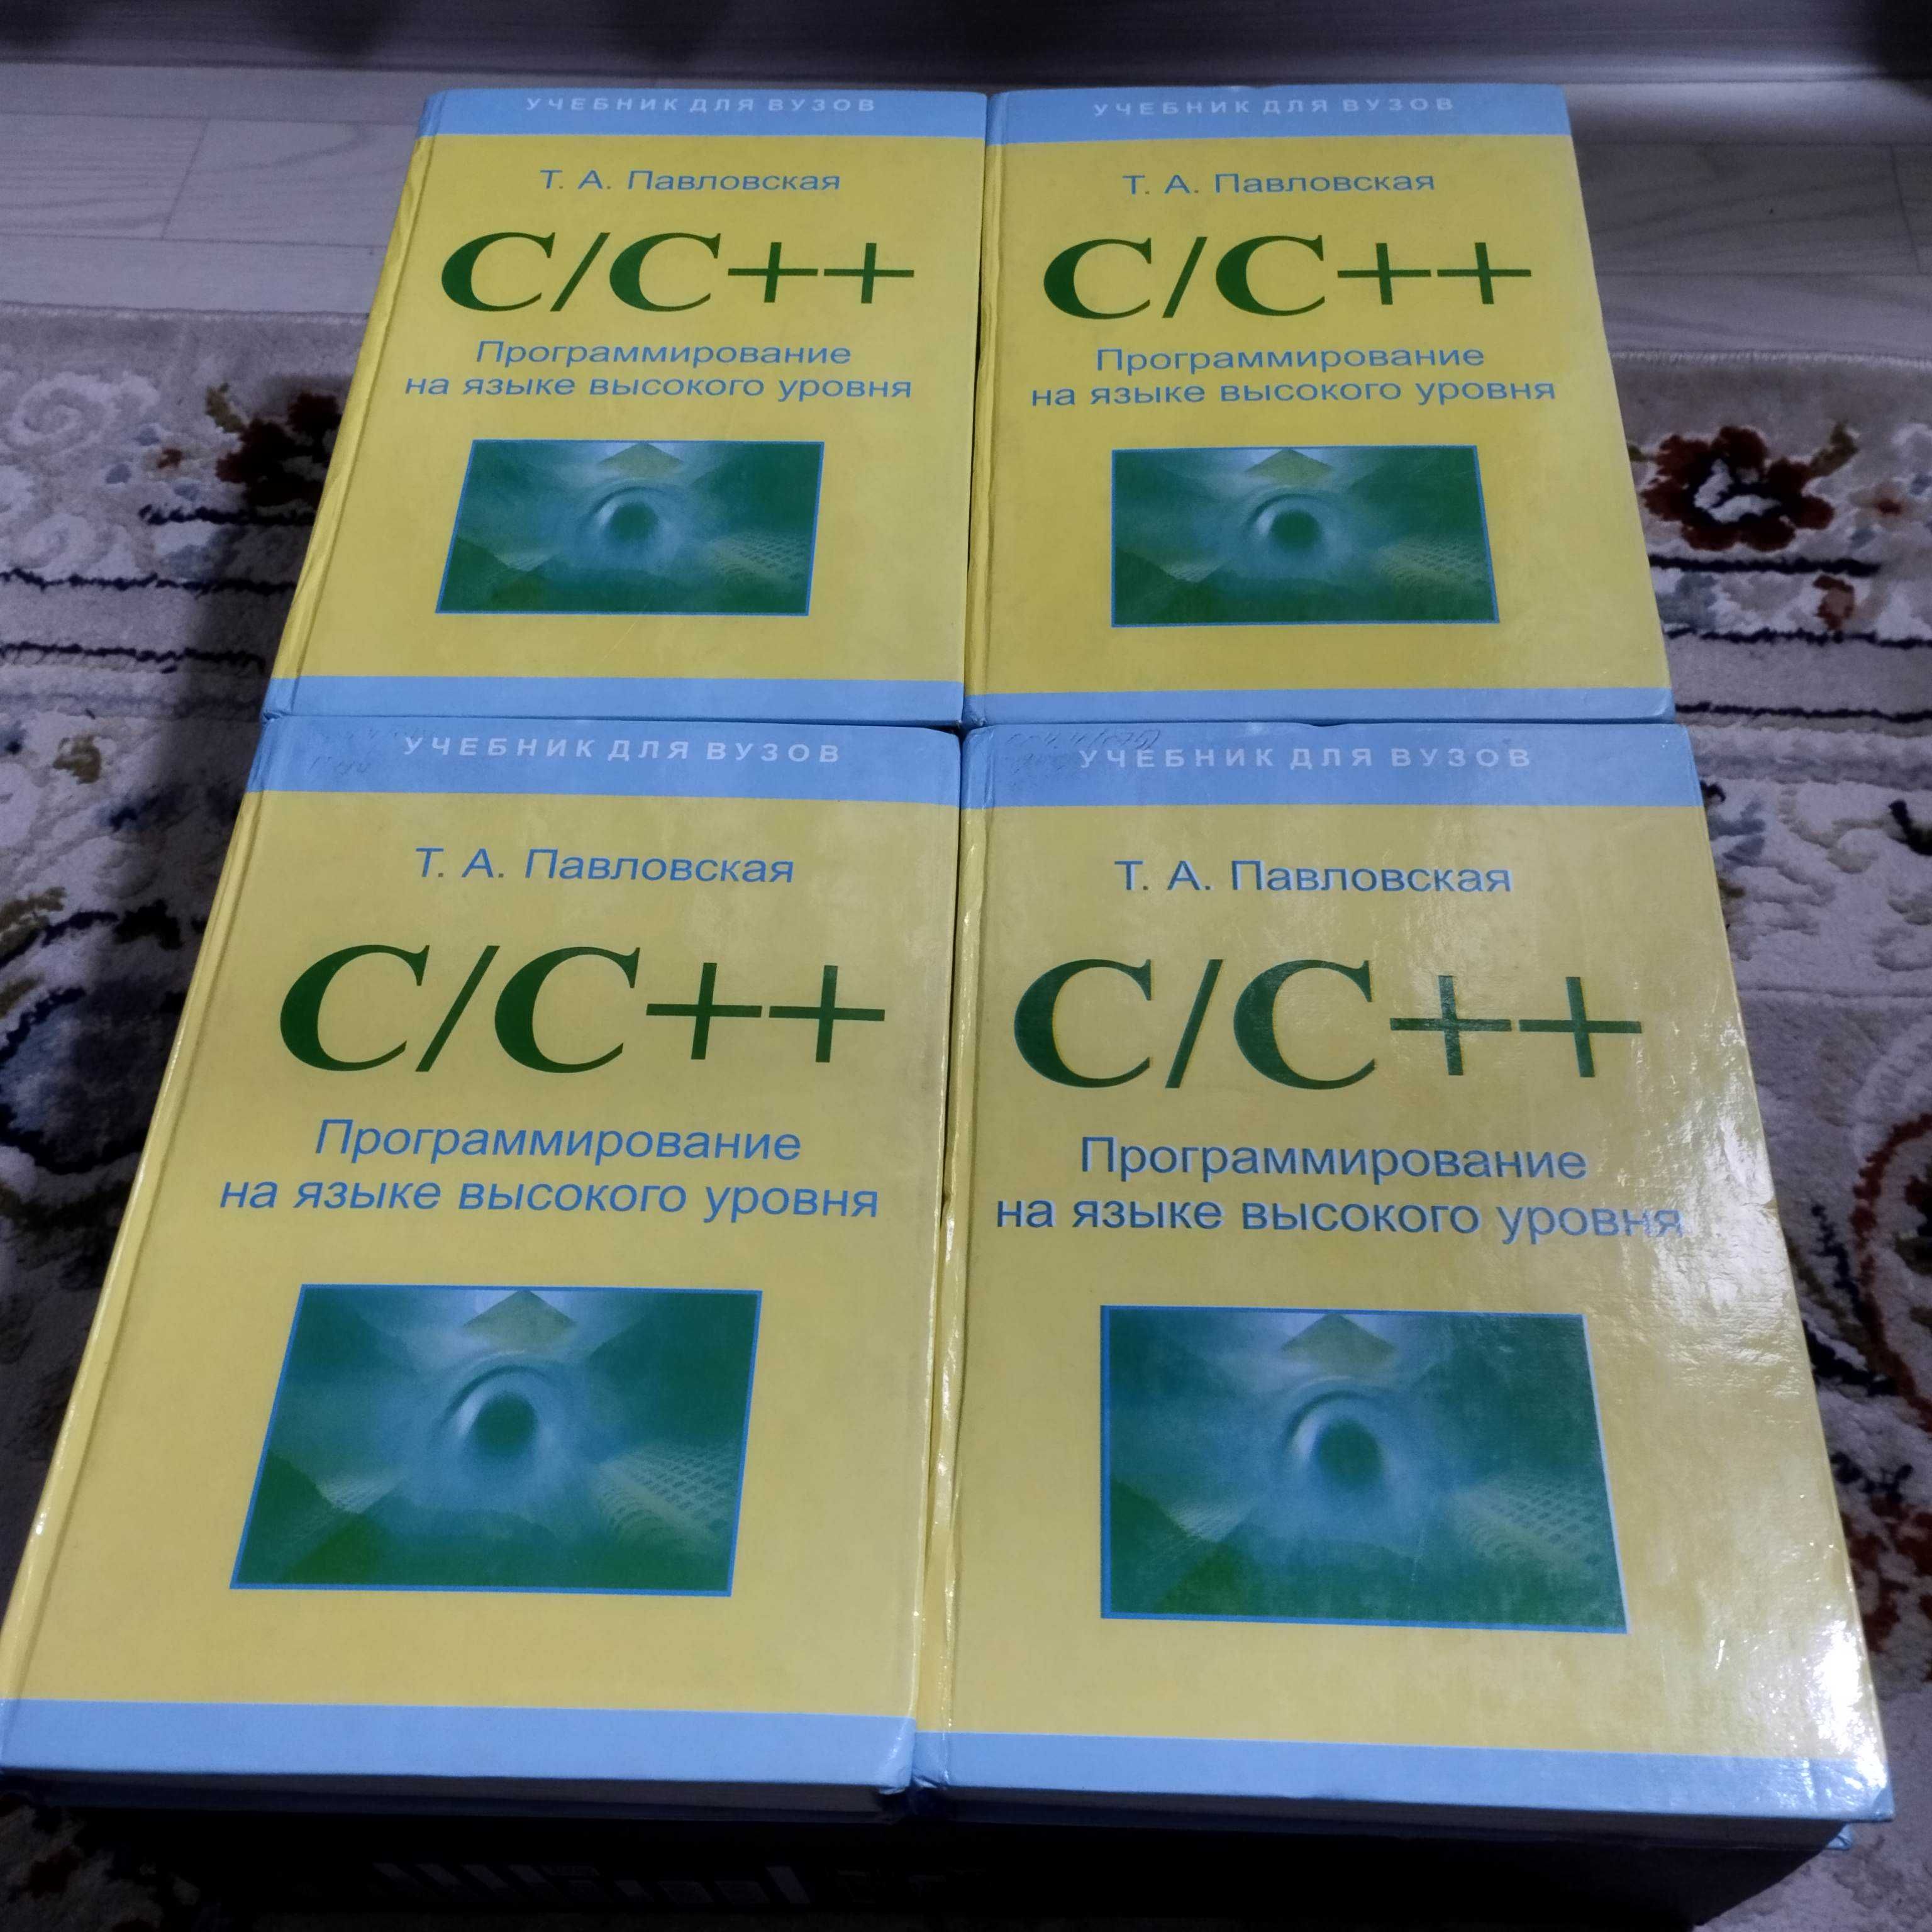 C++ учебник для начинающих продается. Павловская Т.А.